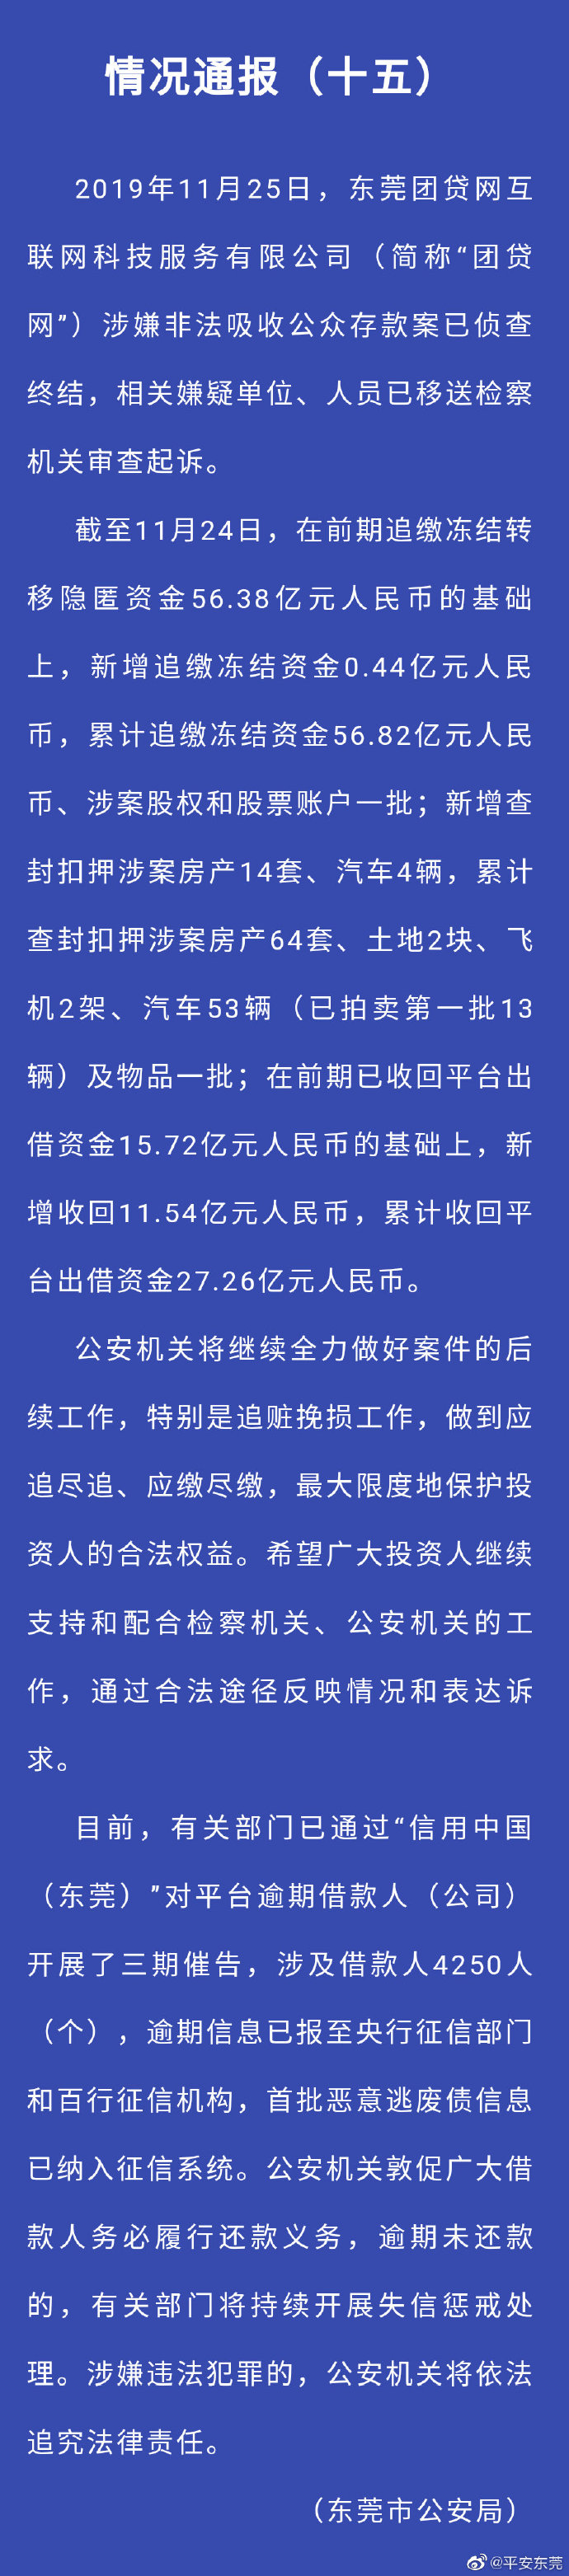 东莞公安局：团贷网一案侦查终结 追缴冻结56.82亿